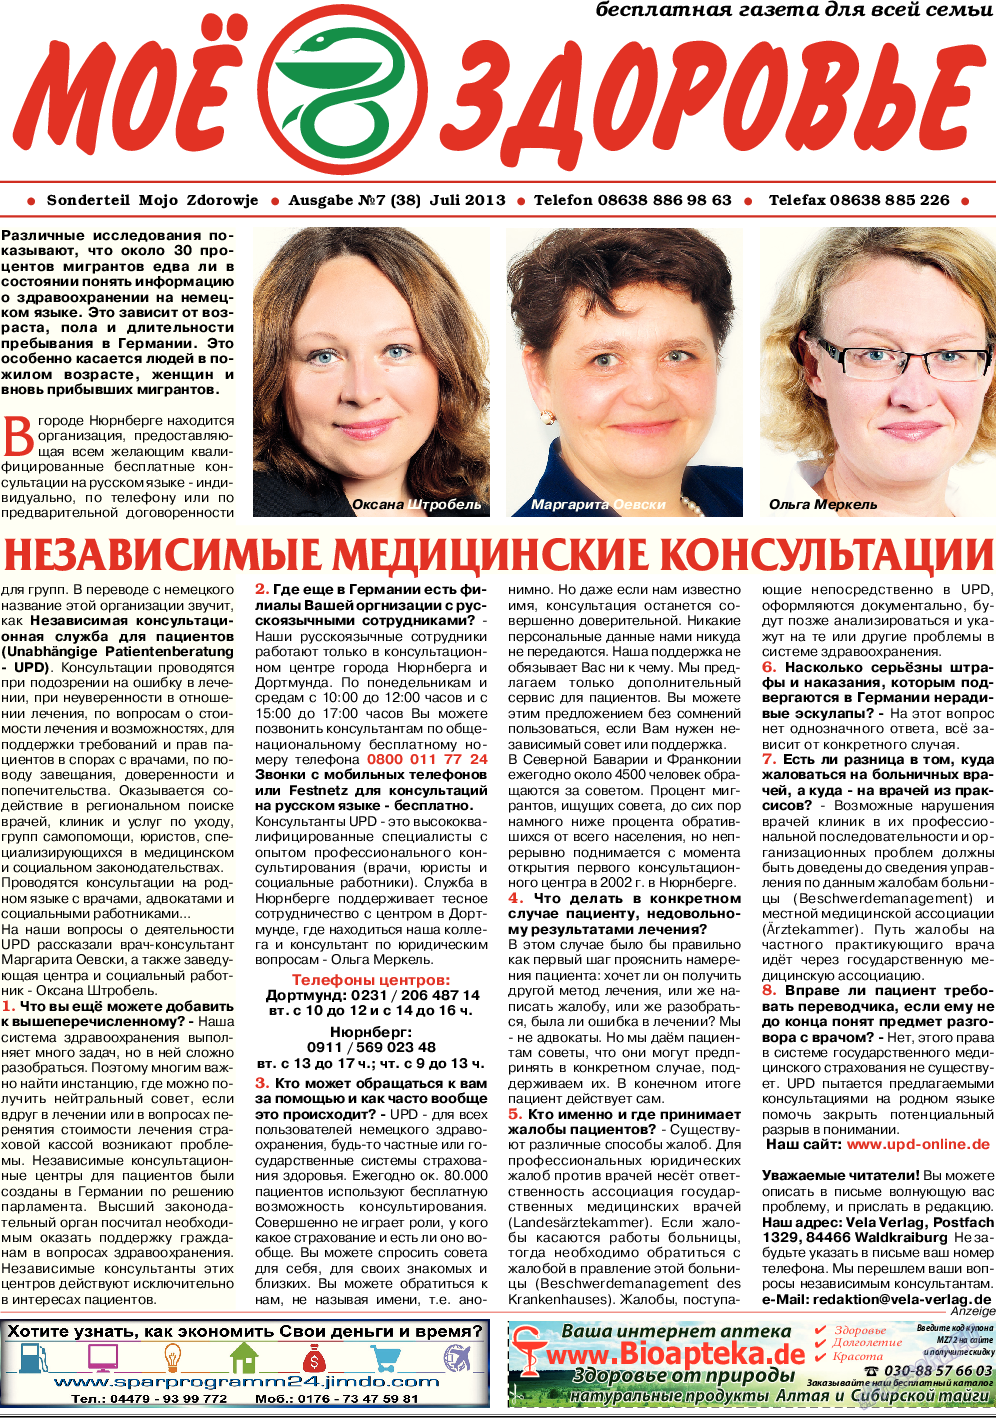 Кругозор (газета). 2013 год, номер 7, стр. 11